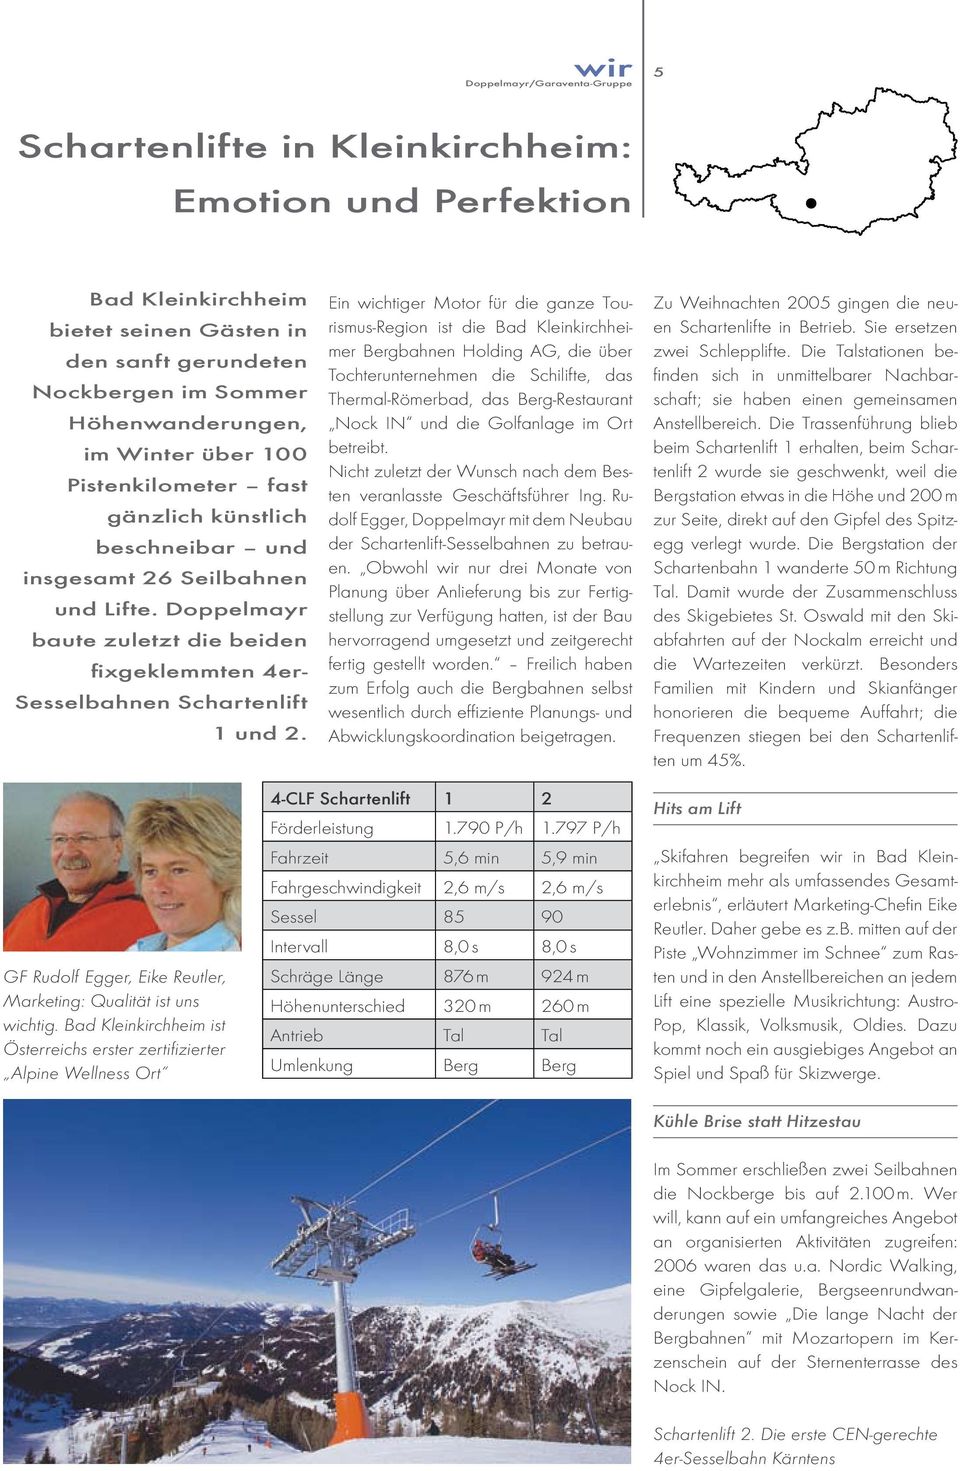 Ein wichtiger Motor für die ganze Tourismus-Region ist die Bad Kleinkirchheimer Bergbahnen Holding AG, die über Tochterunternehmen die Schilifte, das Thermal-Römerbad, das Berg-Restaurant Nock IN und